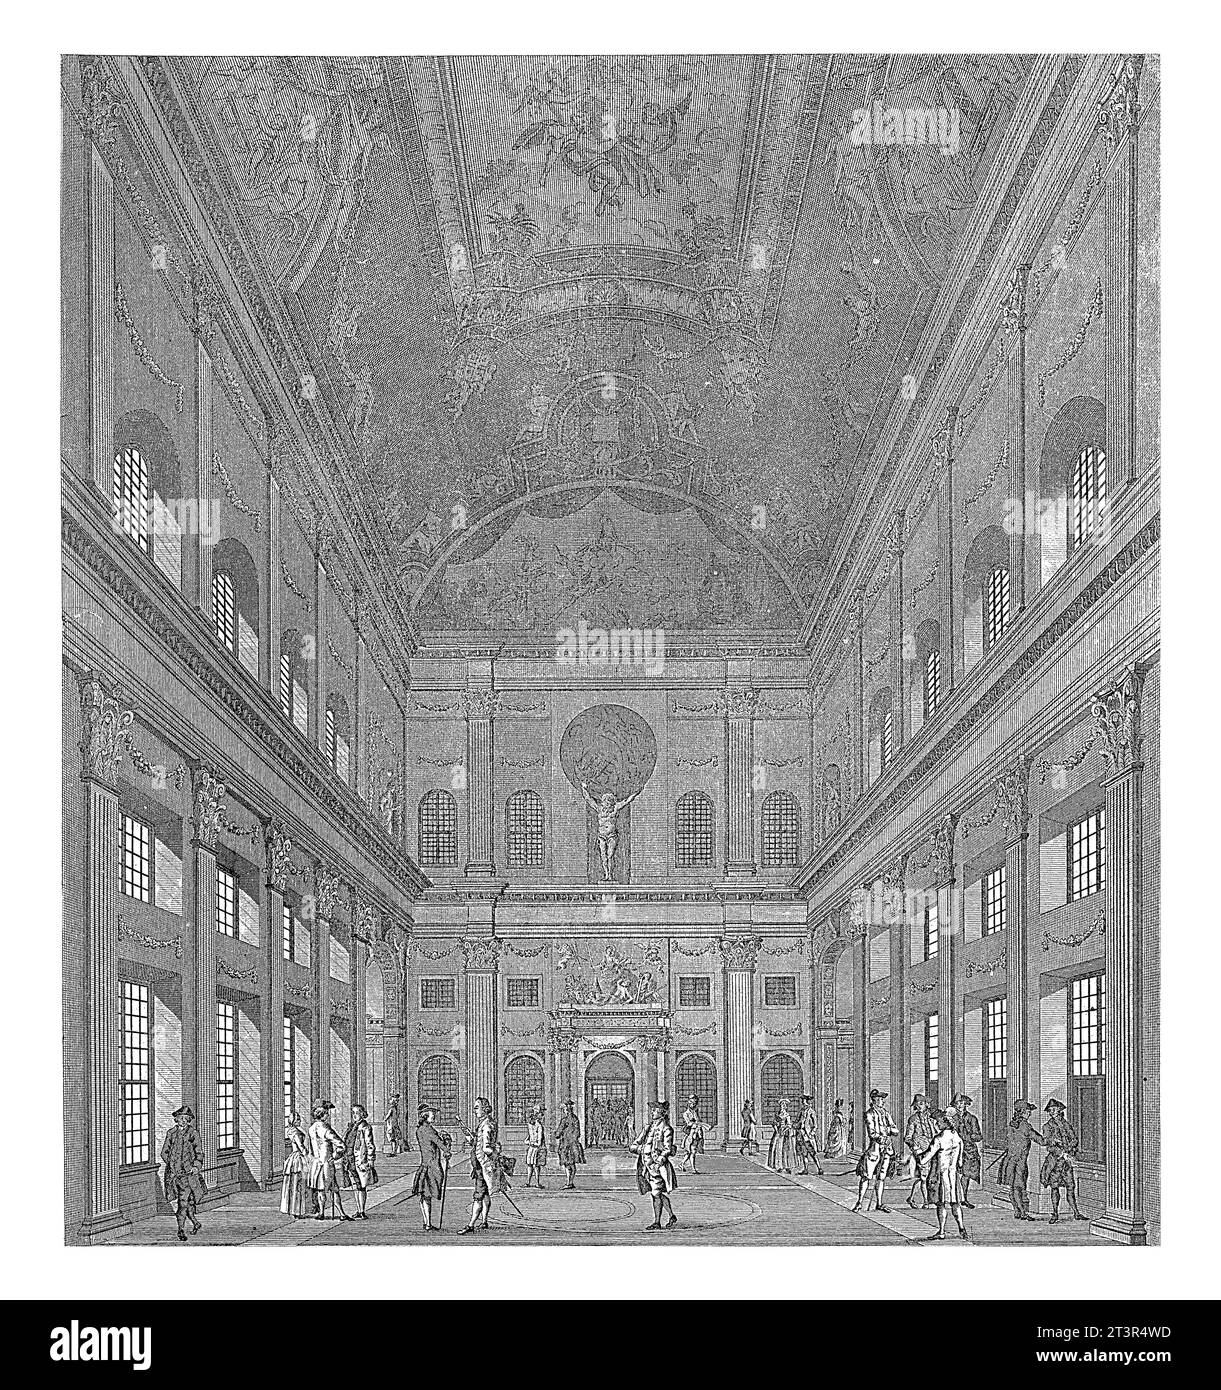 Lado oeste de la Sala Cívica en el Palacio Real en la Plaza Dam, Cornelis Bogerts, después de Hendrik Keun, 1808 - 1834 el lado oeste de la Sala Cívica en Th Foto de stock